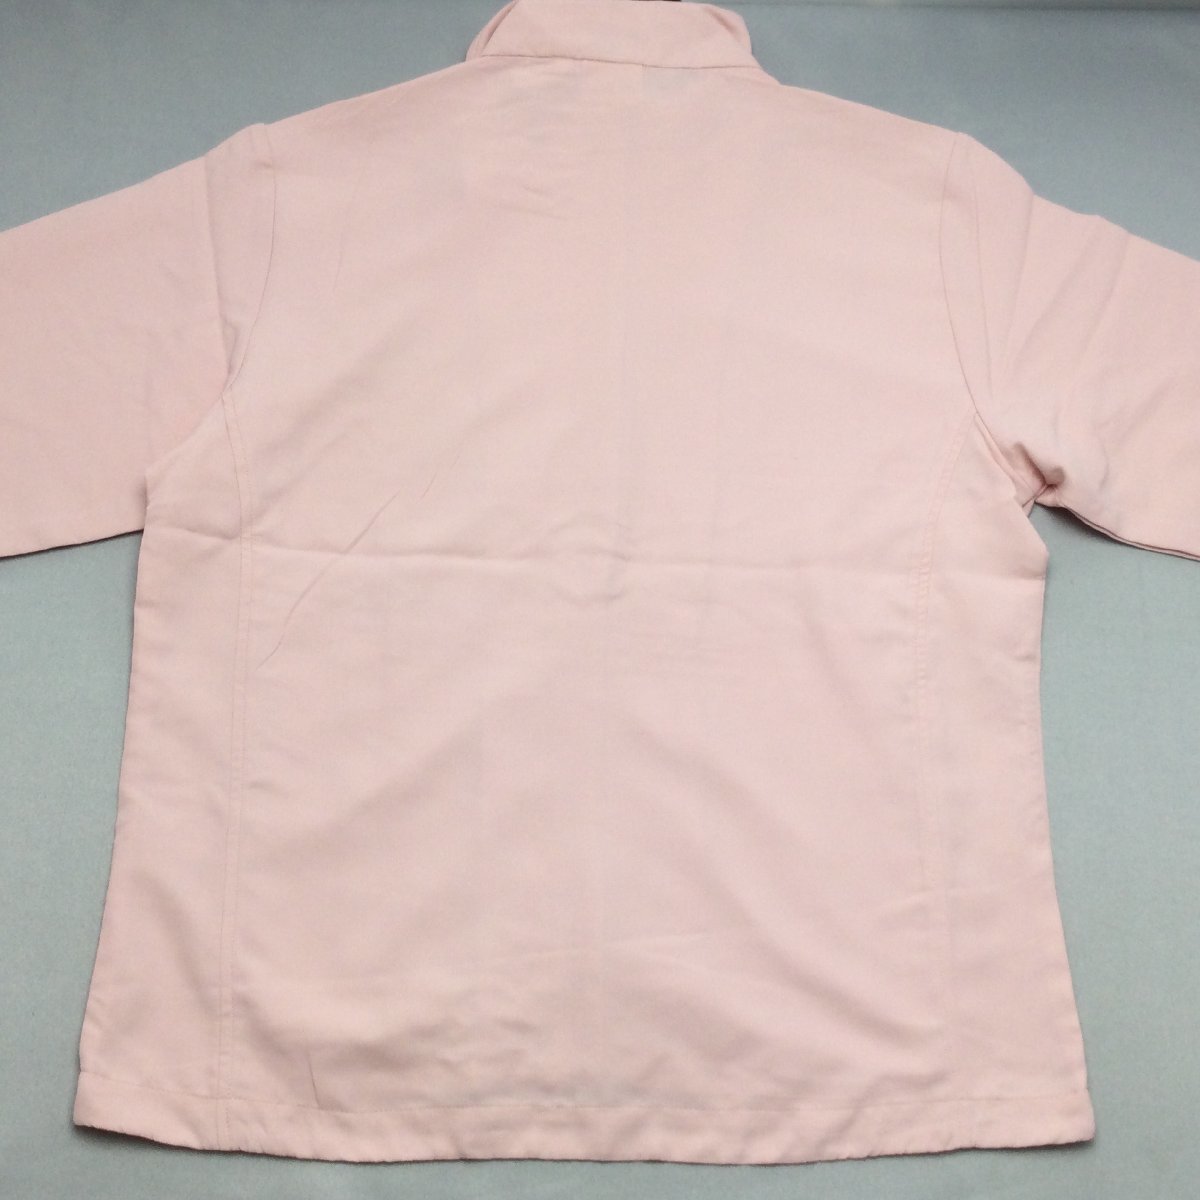 [ бесплатная доставка ][ новый товар ]Kaepa женский жакет (. вода скорость .UV cut ) M розовый *581331